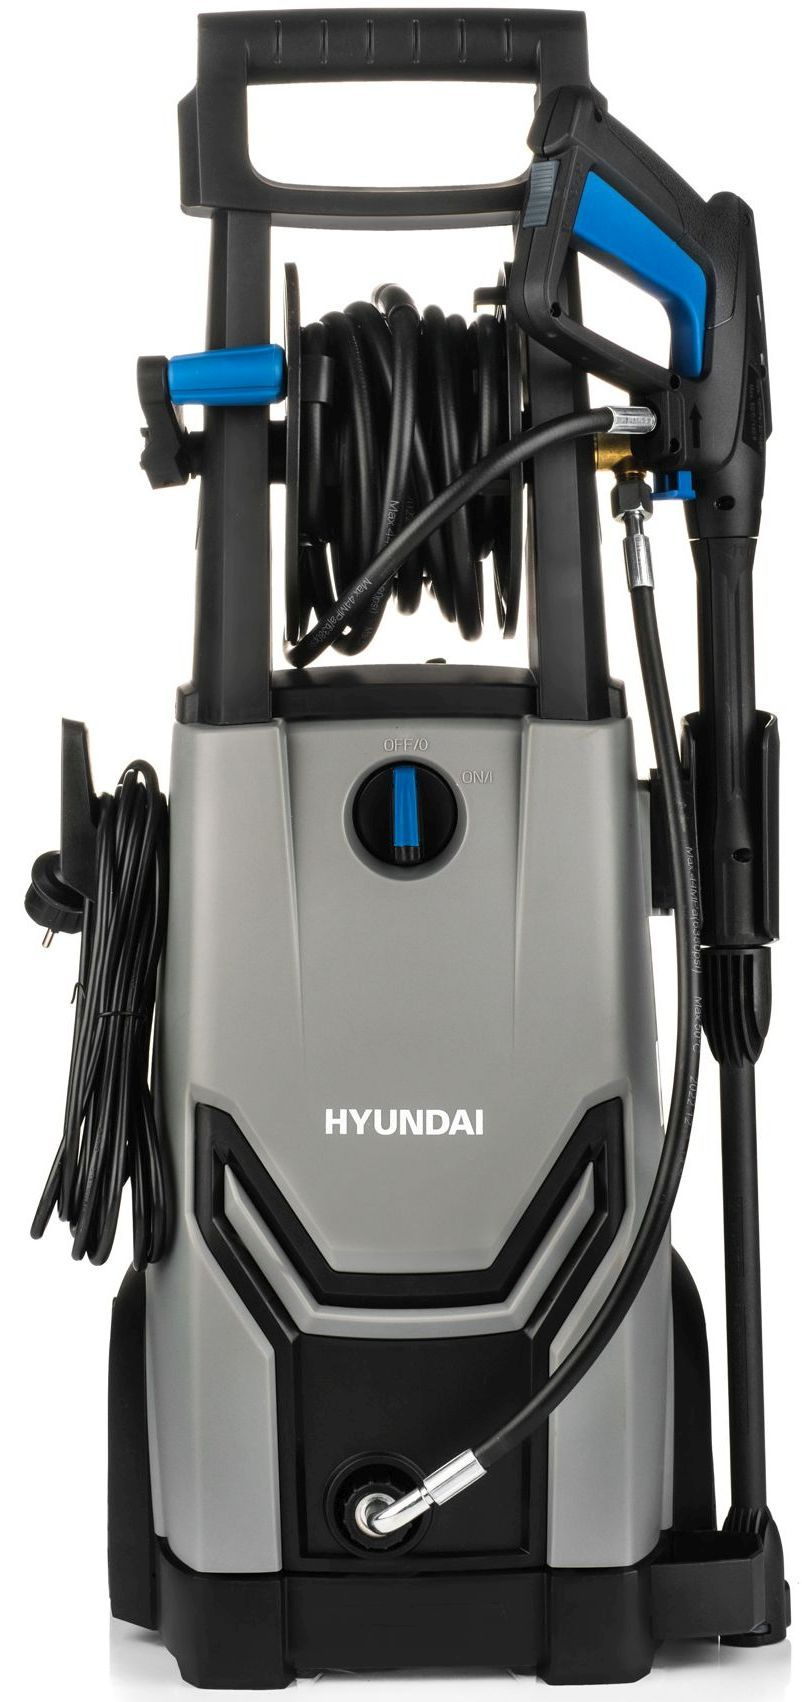 Мойка высокого давления hyundai отзывы. Запчасти мойки высокого давления Hyundai.